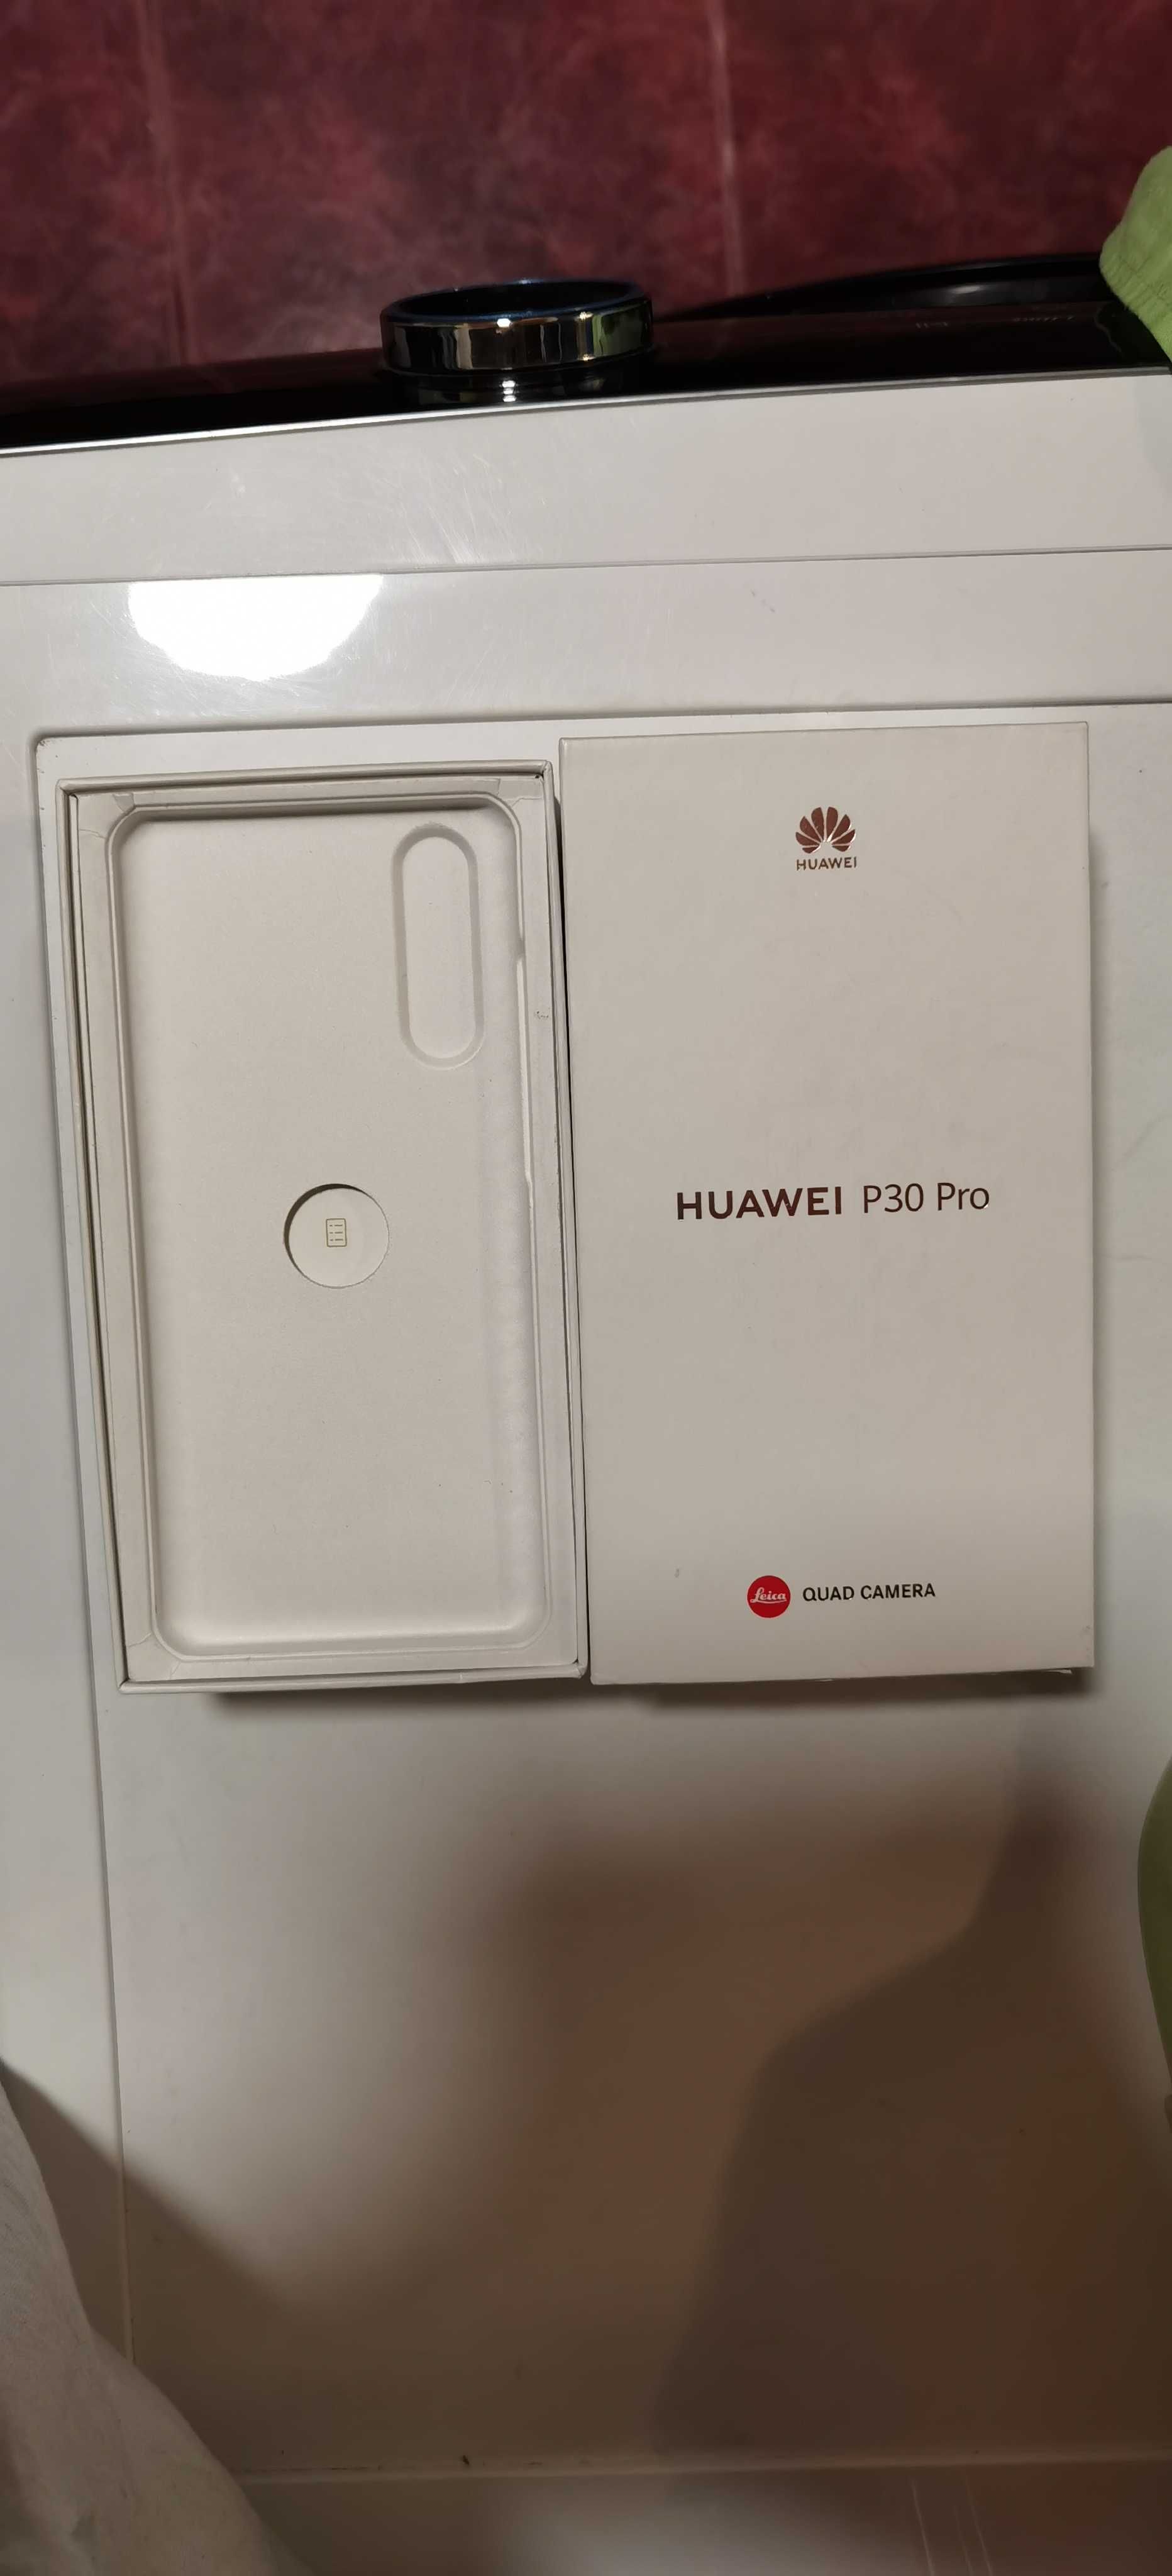 Piese și accesorii noi pentru Huawei